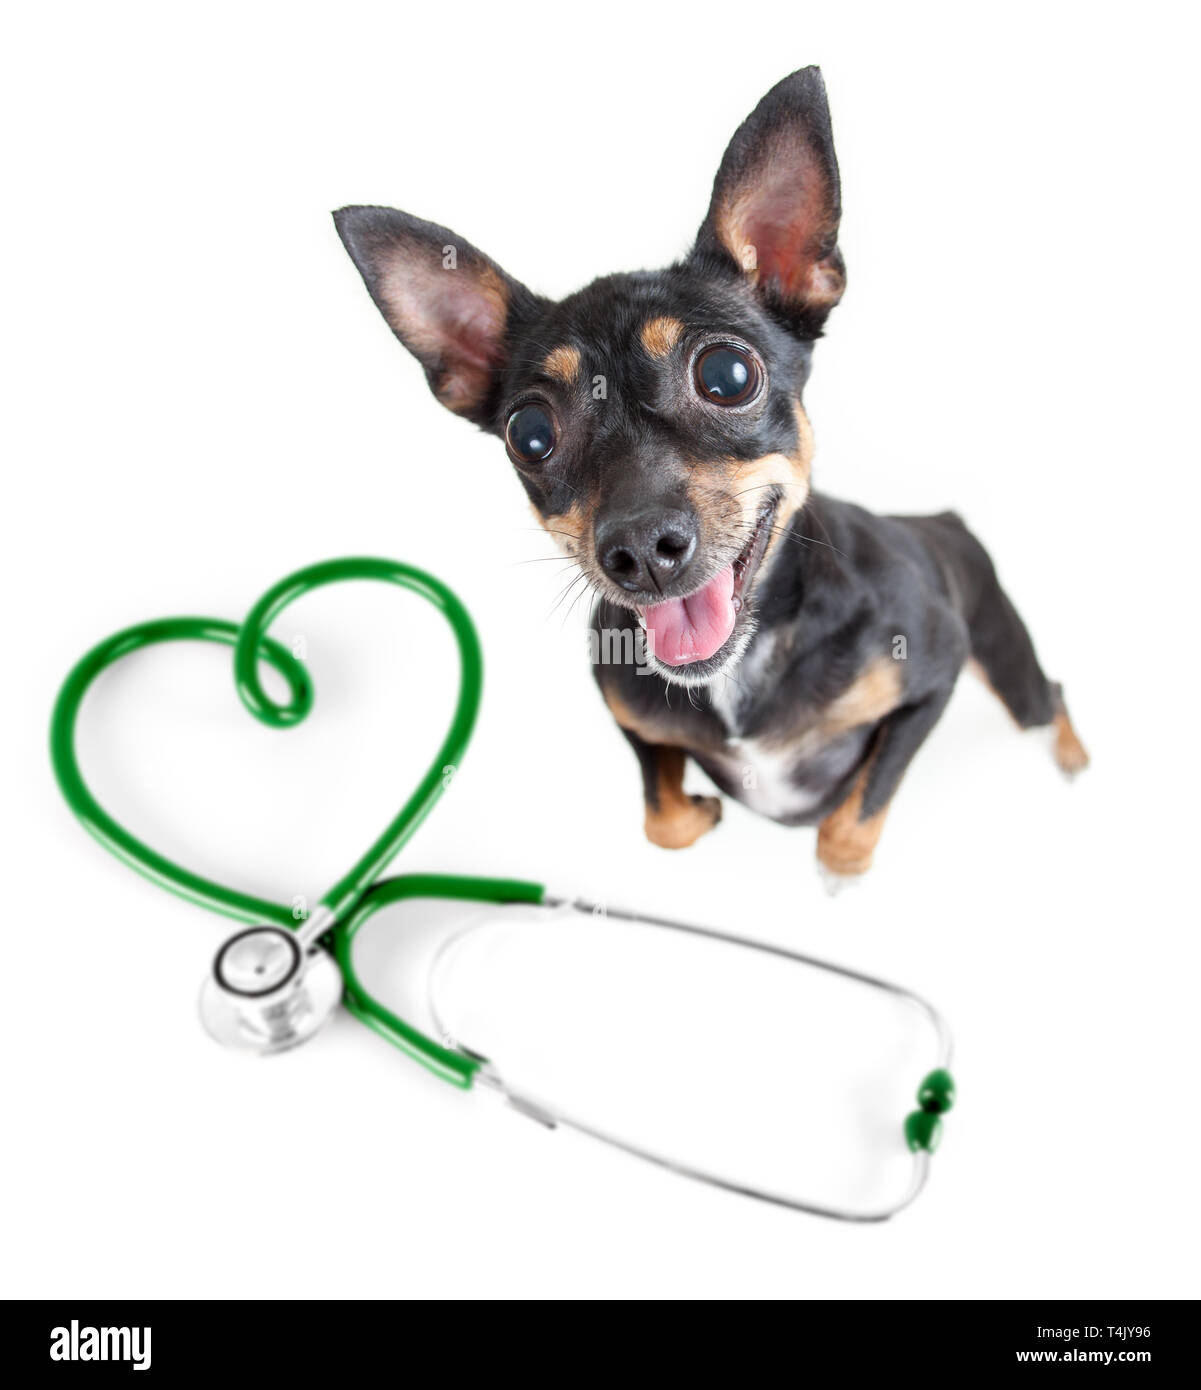 Questioni veterinarie per cani e altri animali domestici . Cane e stetoscopio in vista dall'alto standing isolato. Foto Stock